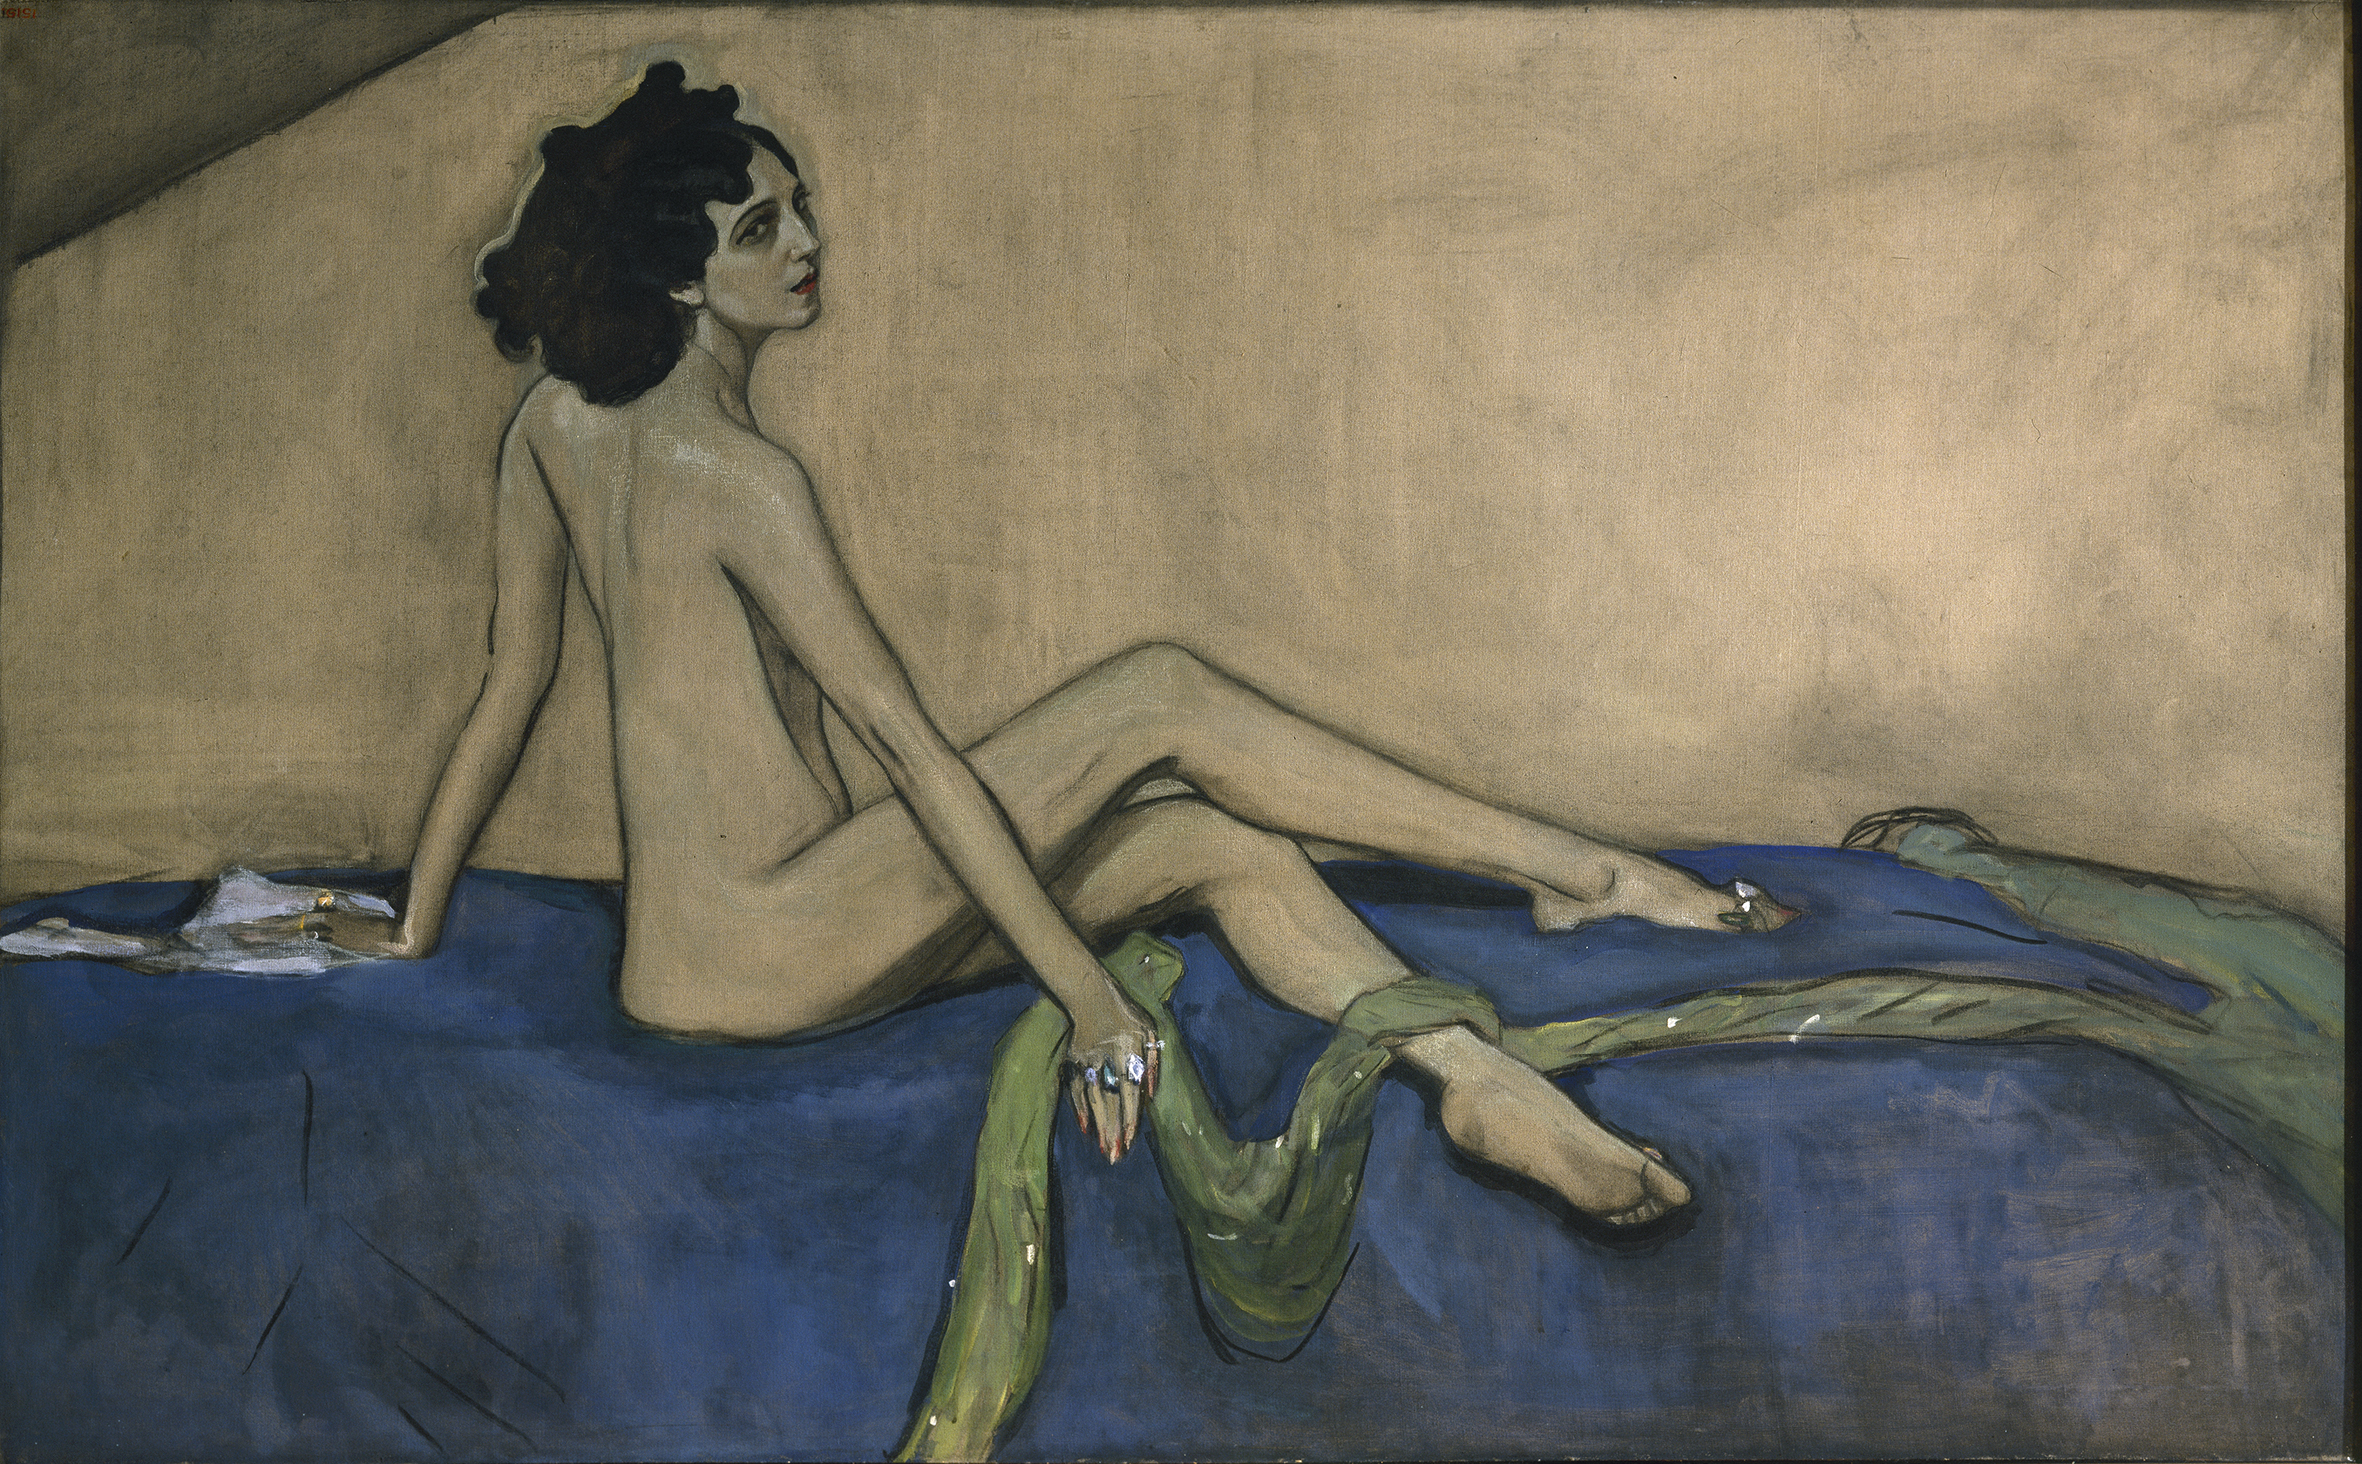 艾达·鲁宾斯坦 by 瓦伦丁· 谢罗夫 - 1910 - 147 x 233 cm 